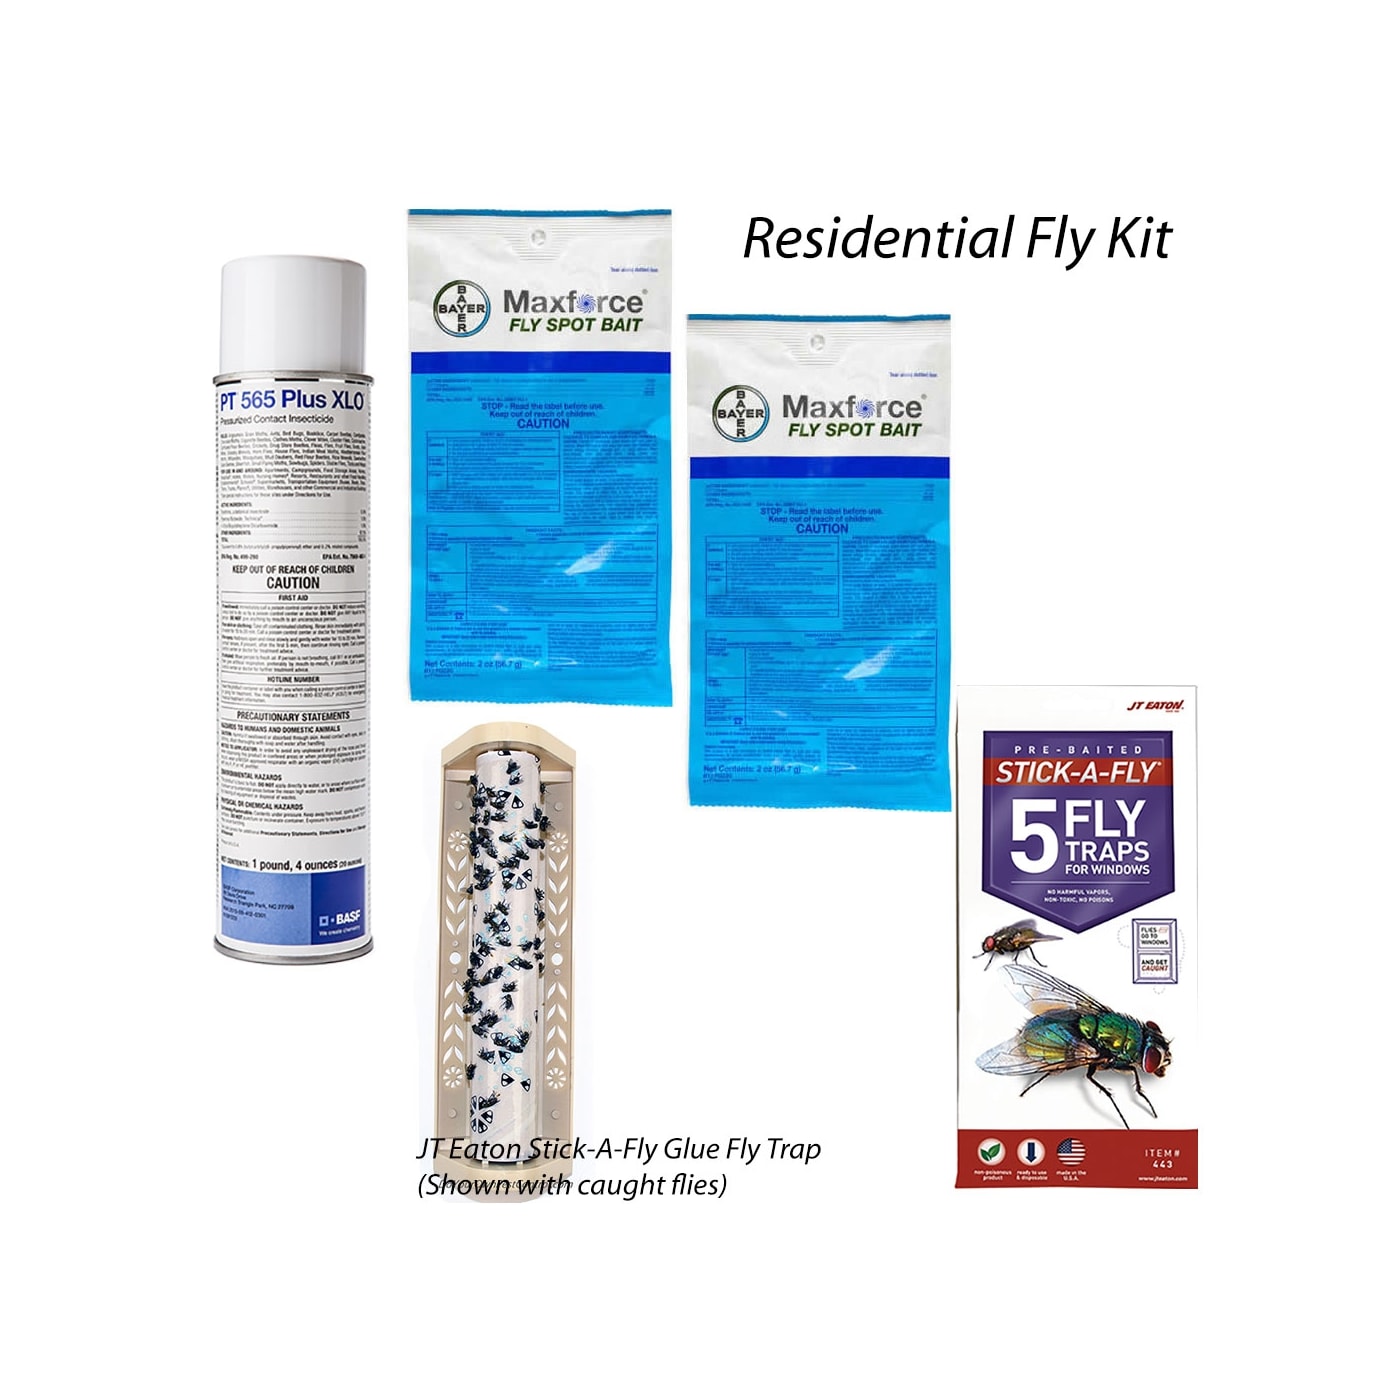 Residential Fly Kit